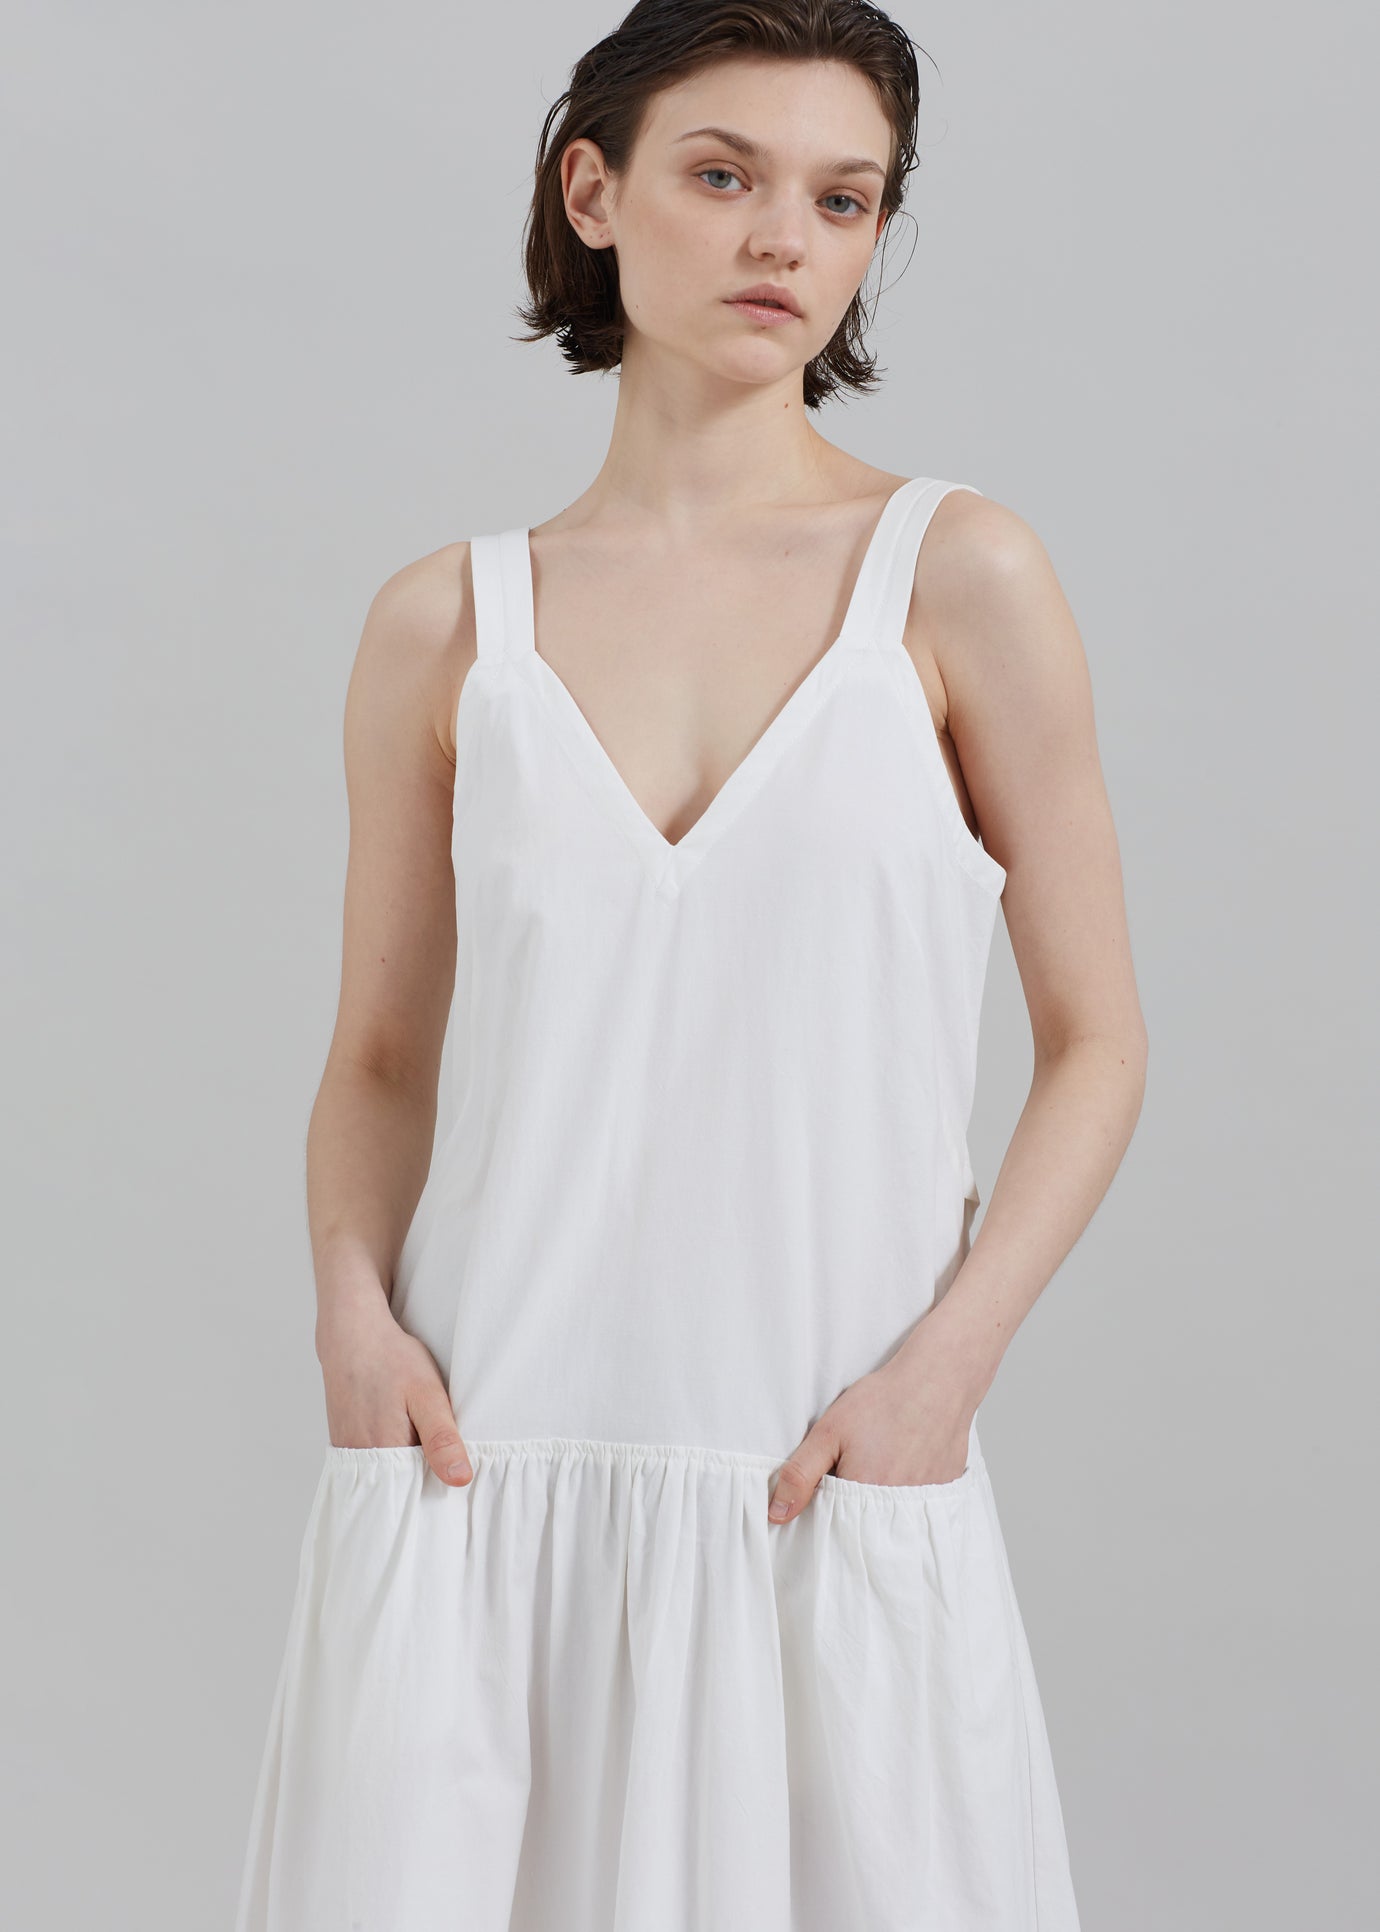 Proenza Schouler White Label Sasha Dress - Off White